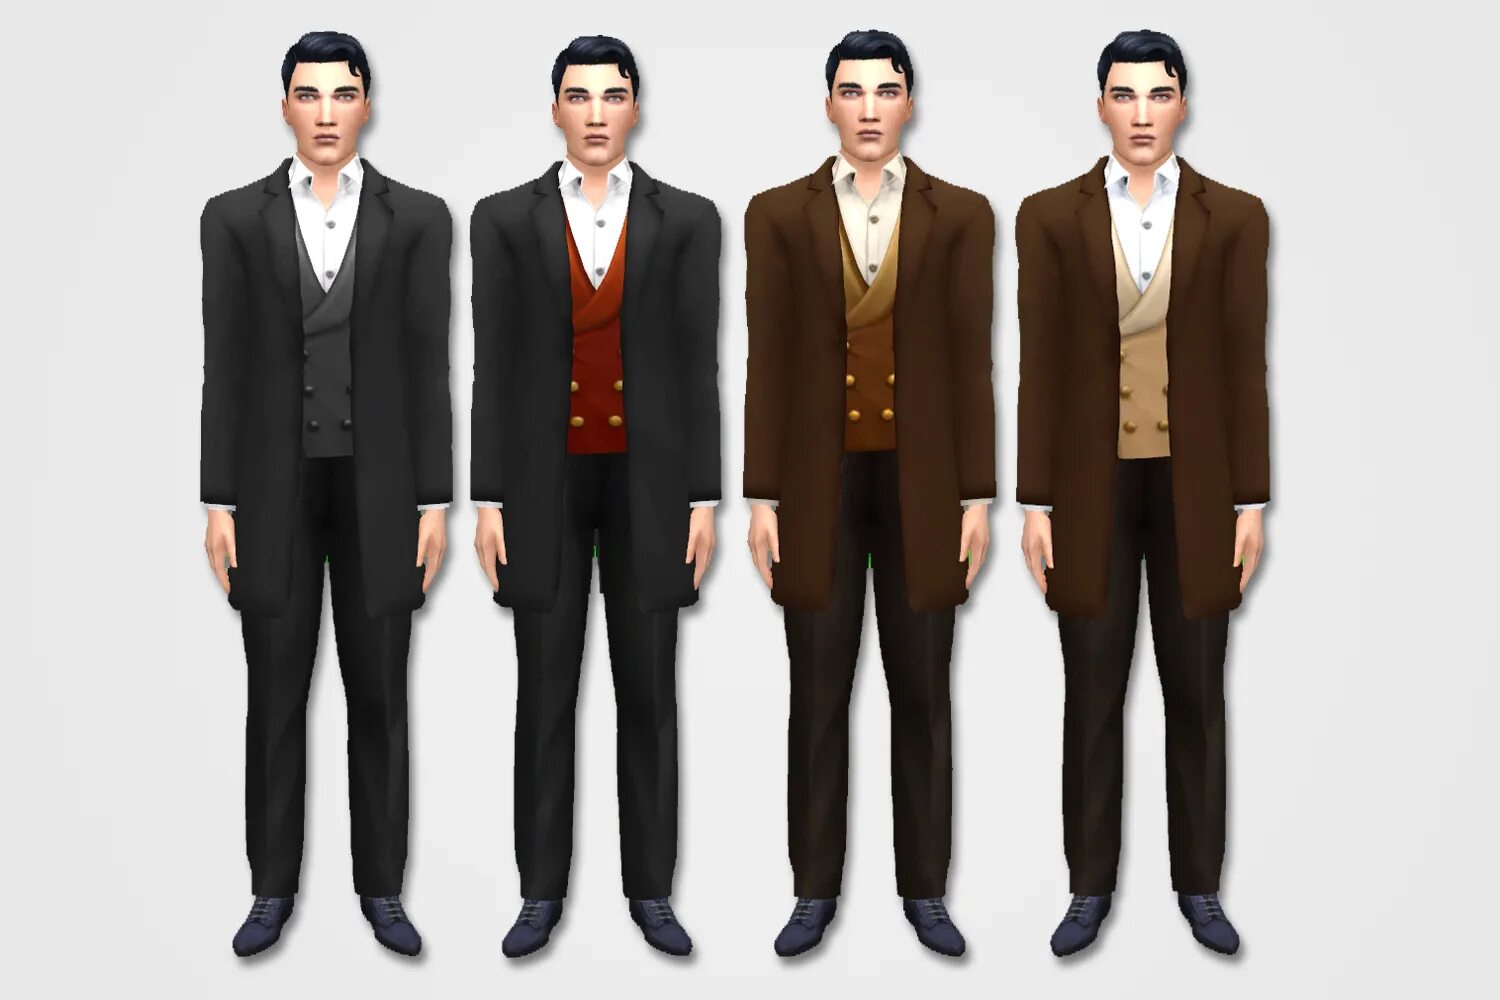 18 4 мужчин. SIMS 4 clothes Suit. Симс 4 Викторианская одежда мужская. Victorian men Suits для симс 4. Симс 4 пиджак с жилетом.